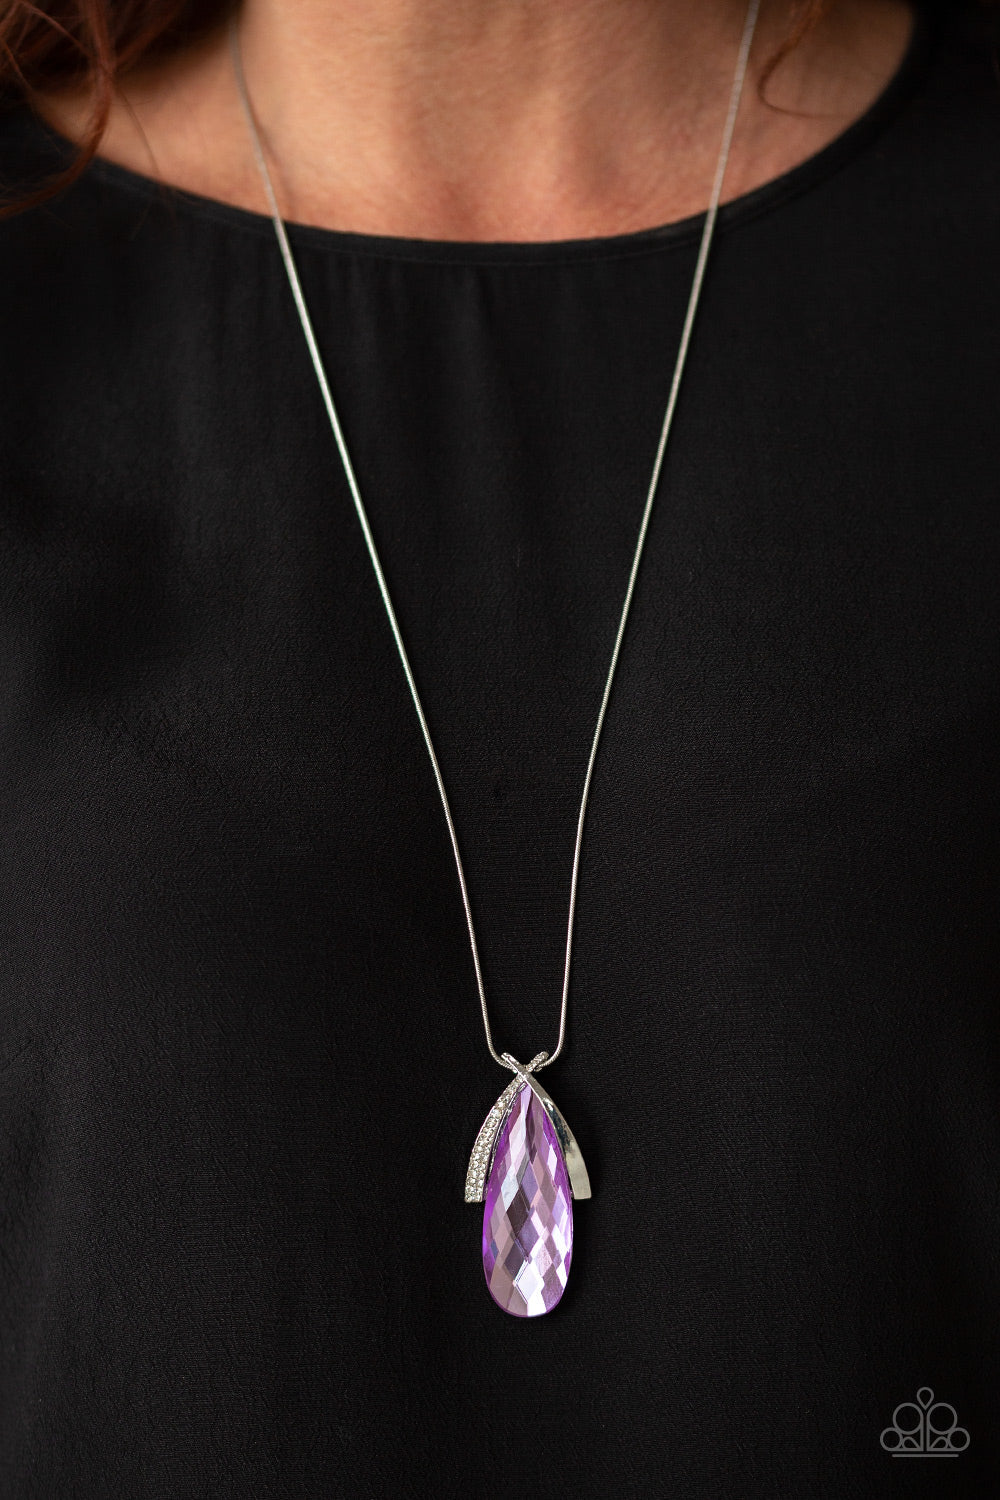 Paparazzi Stellar Sophistication - Purple Teardrop Gem - White Rhinestones - Necklace & Earrings - $5 Jewelry with Ashley Swint